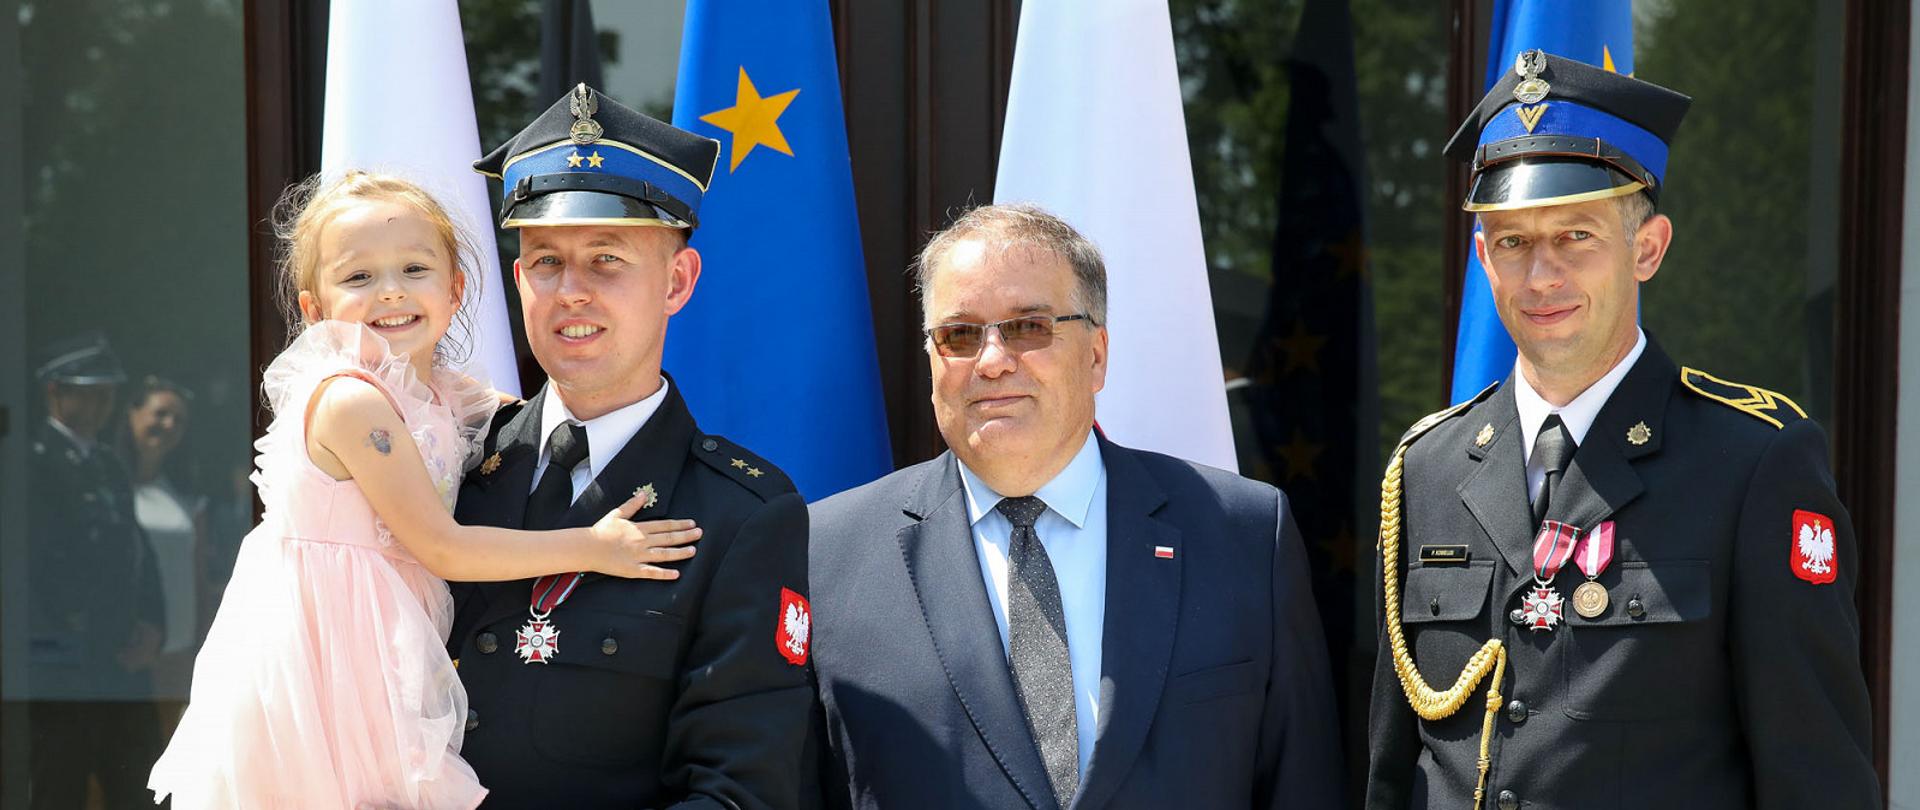 Po lewej stronie strażak w mundurze wyjściowym z dziewczynką w jasnej sukience na rękach. Na środku Minister Andrzej Dera w garniturze. Po prawej strażak w mundurze wyjściowym. Na mundurach obu strażaków widoczne Krzyże zasługi za dzielność. W tle flagi Polski i Unii Europejskiej